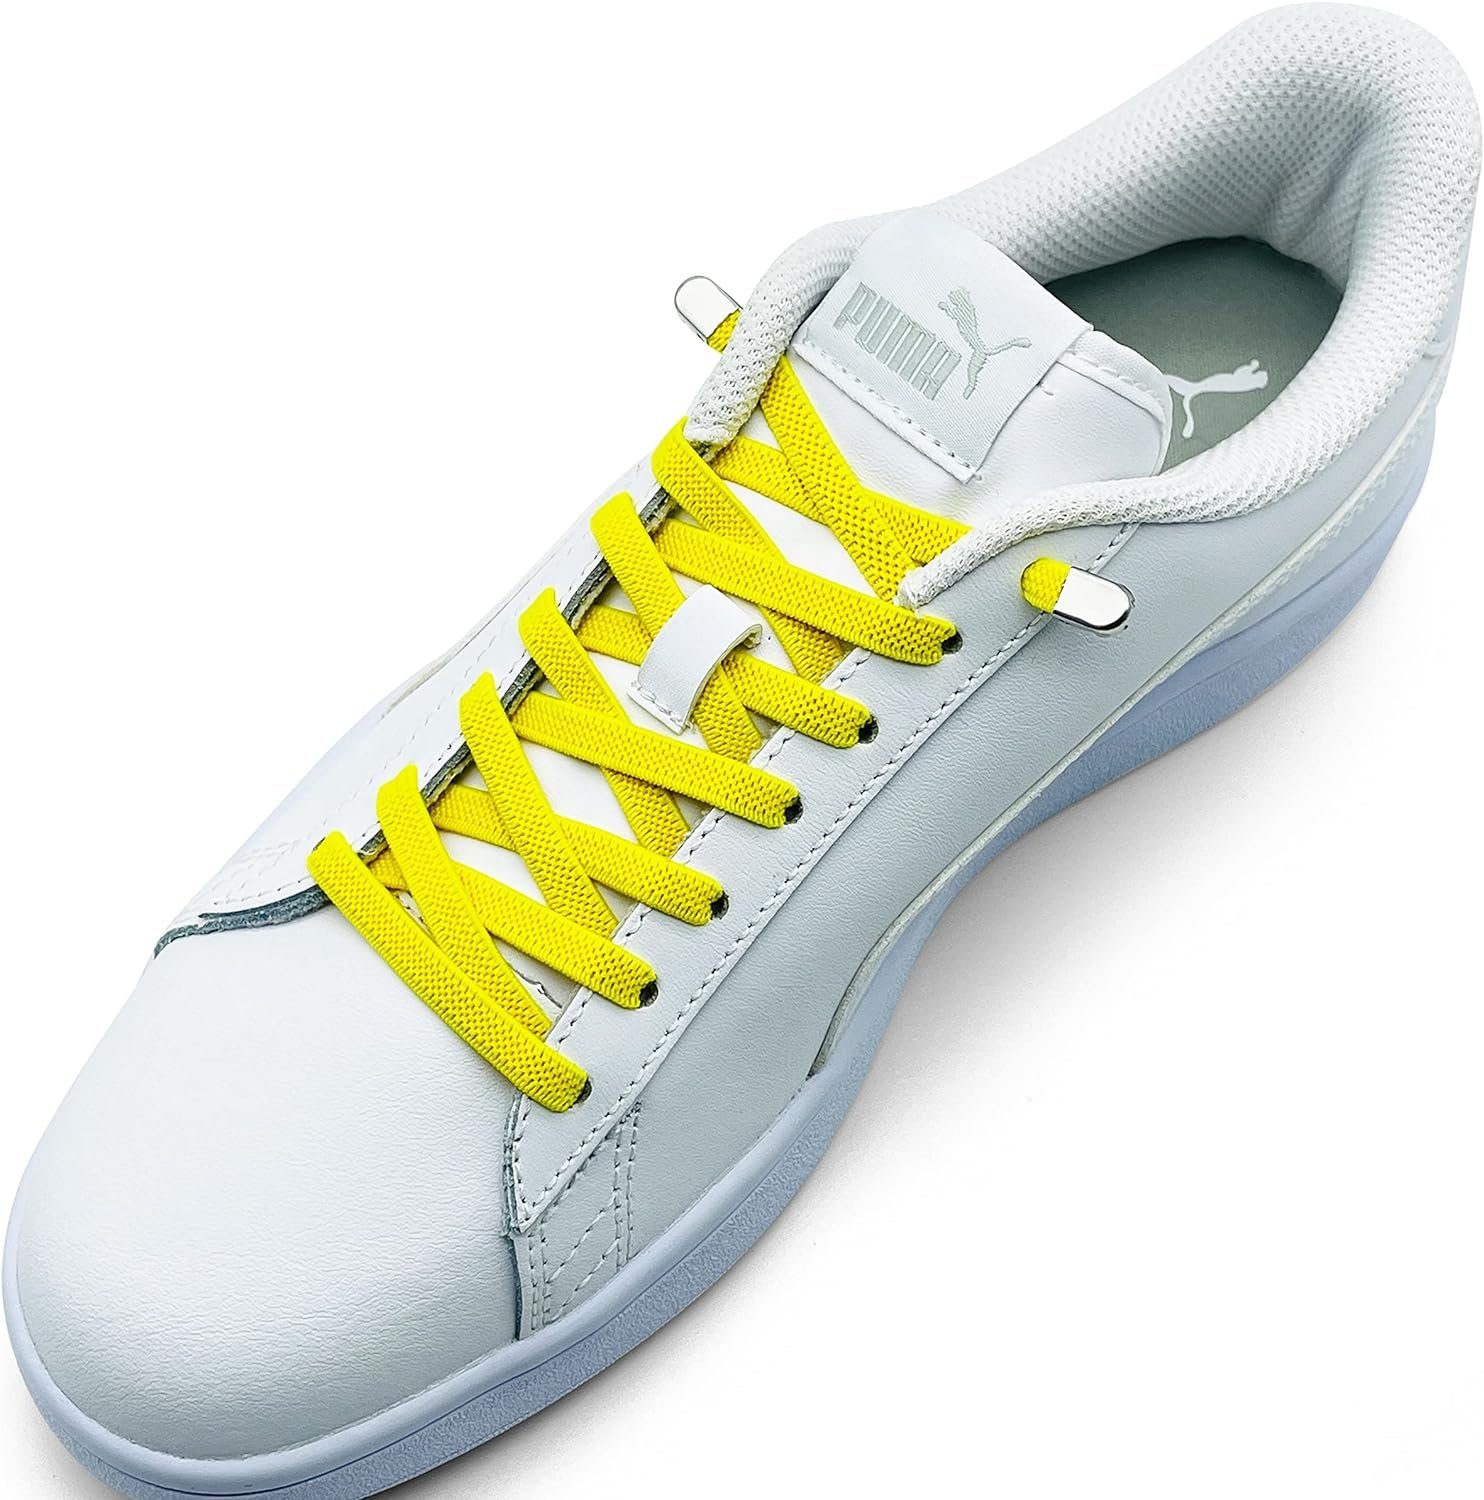 ELANOX Schnürsenkel 4 Stück für 2 Paar Schuhe elastische Schnürsenkel mit Clips, inkl. Enden (Clips) - 8 St. in silber gelb